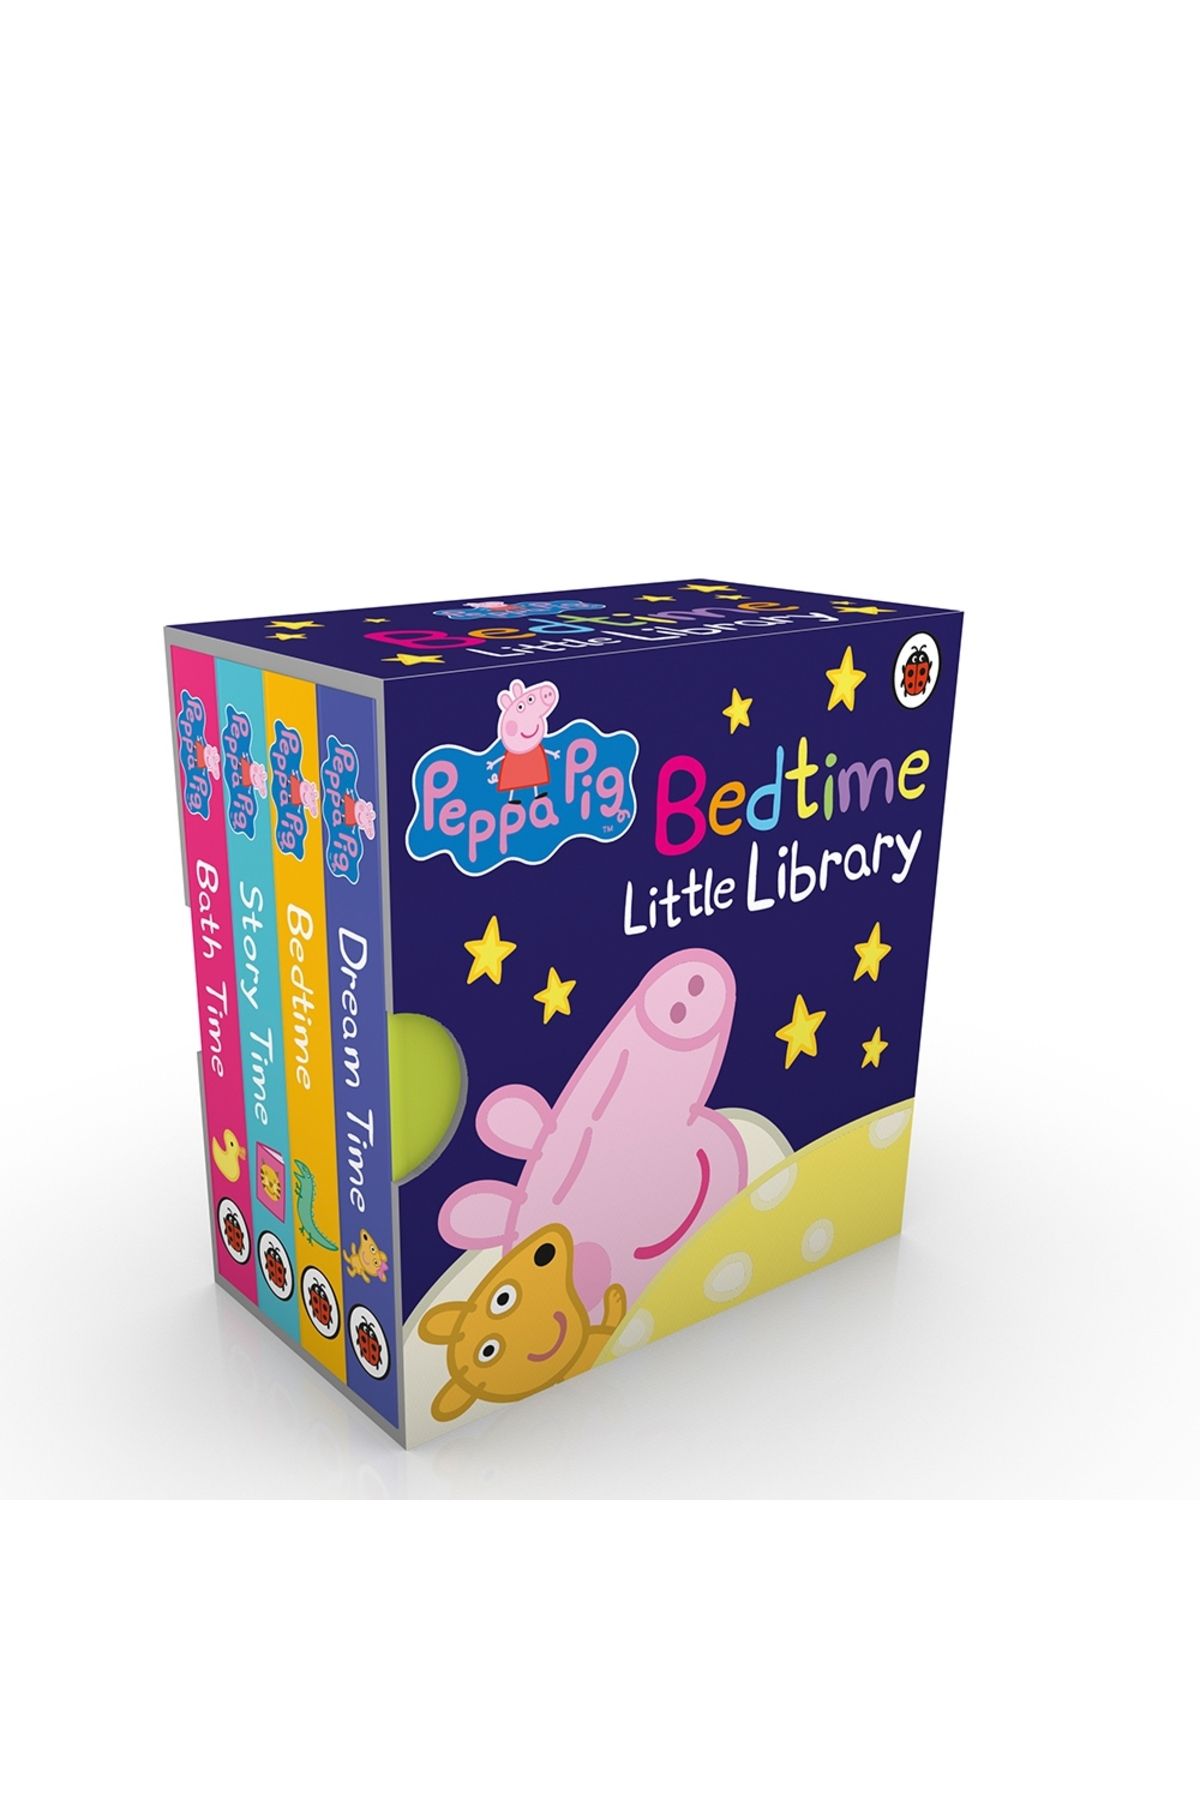 Penguin Books Peppa Pig - Bedtime Little Library